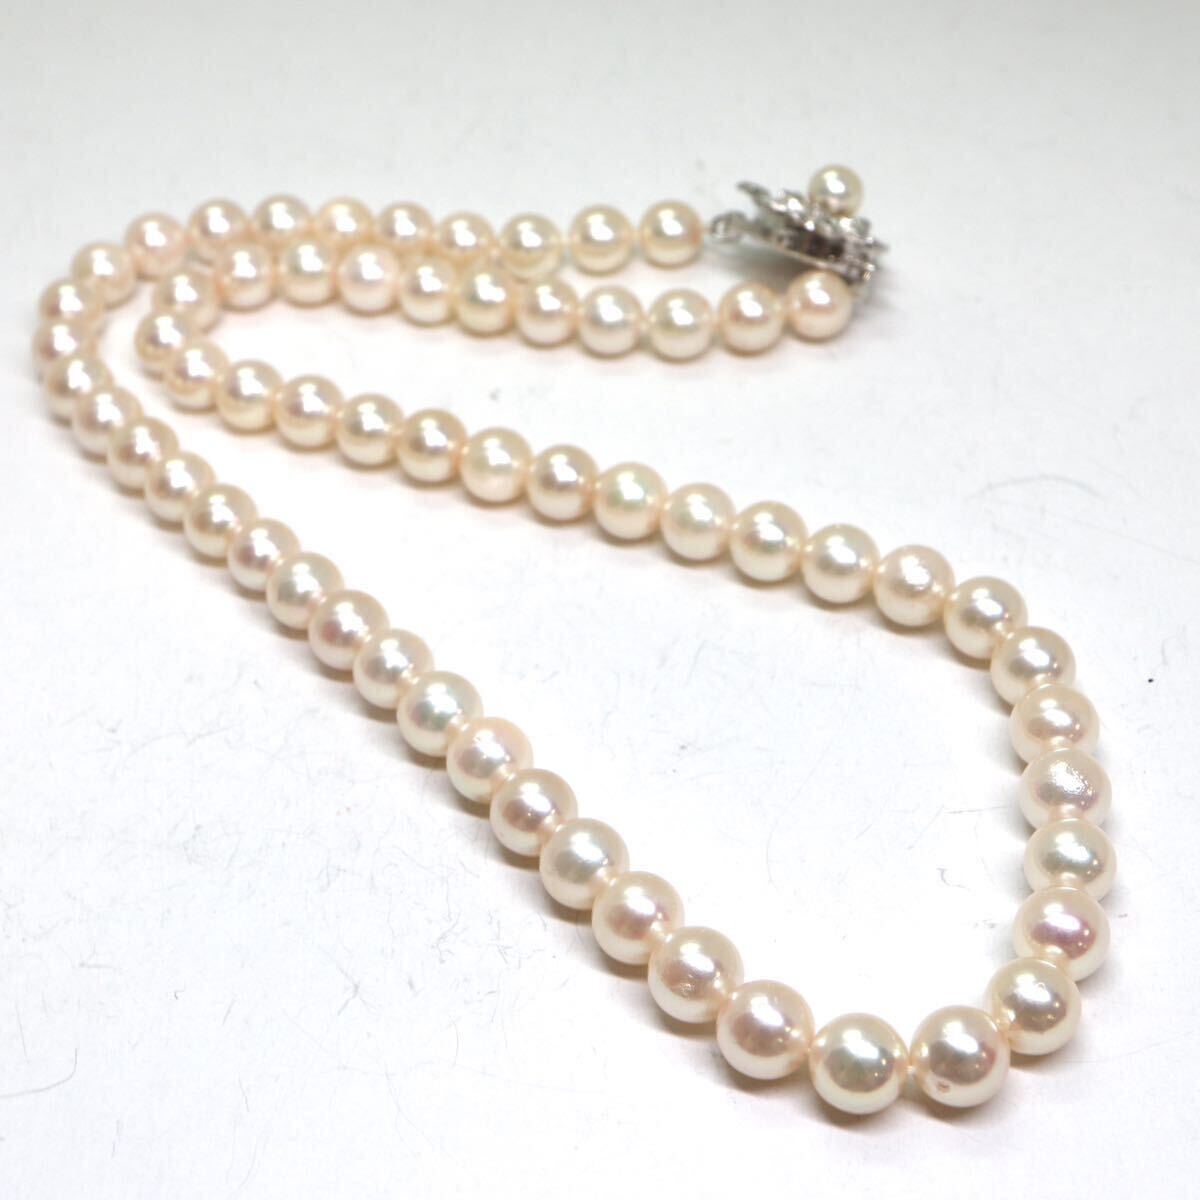 テリ良し!!《アコヤ本真珠ネックレス》A 約6.5-7.0mm珠 29.9g 約42.5cm pearl necklace ジュエリー jewelry CA0/DC0の画像5